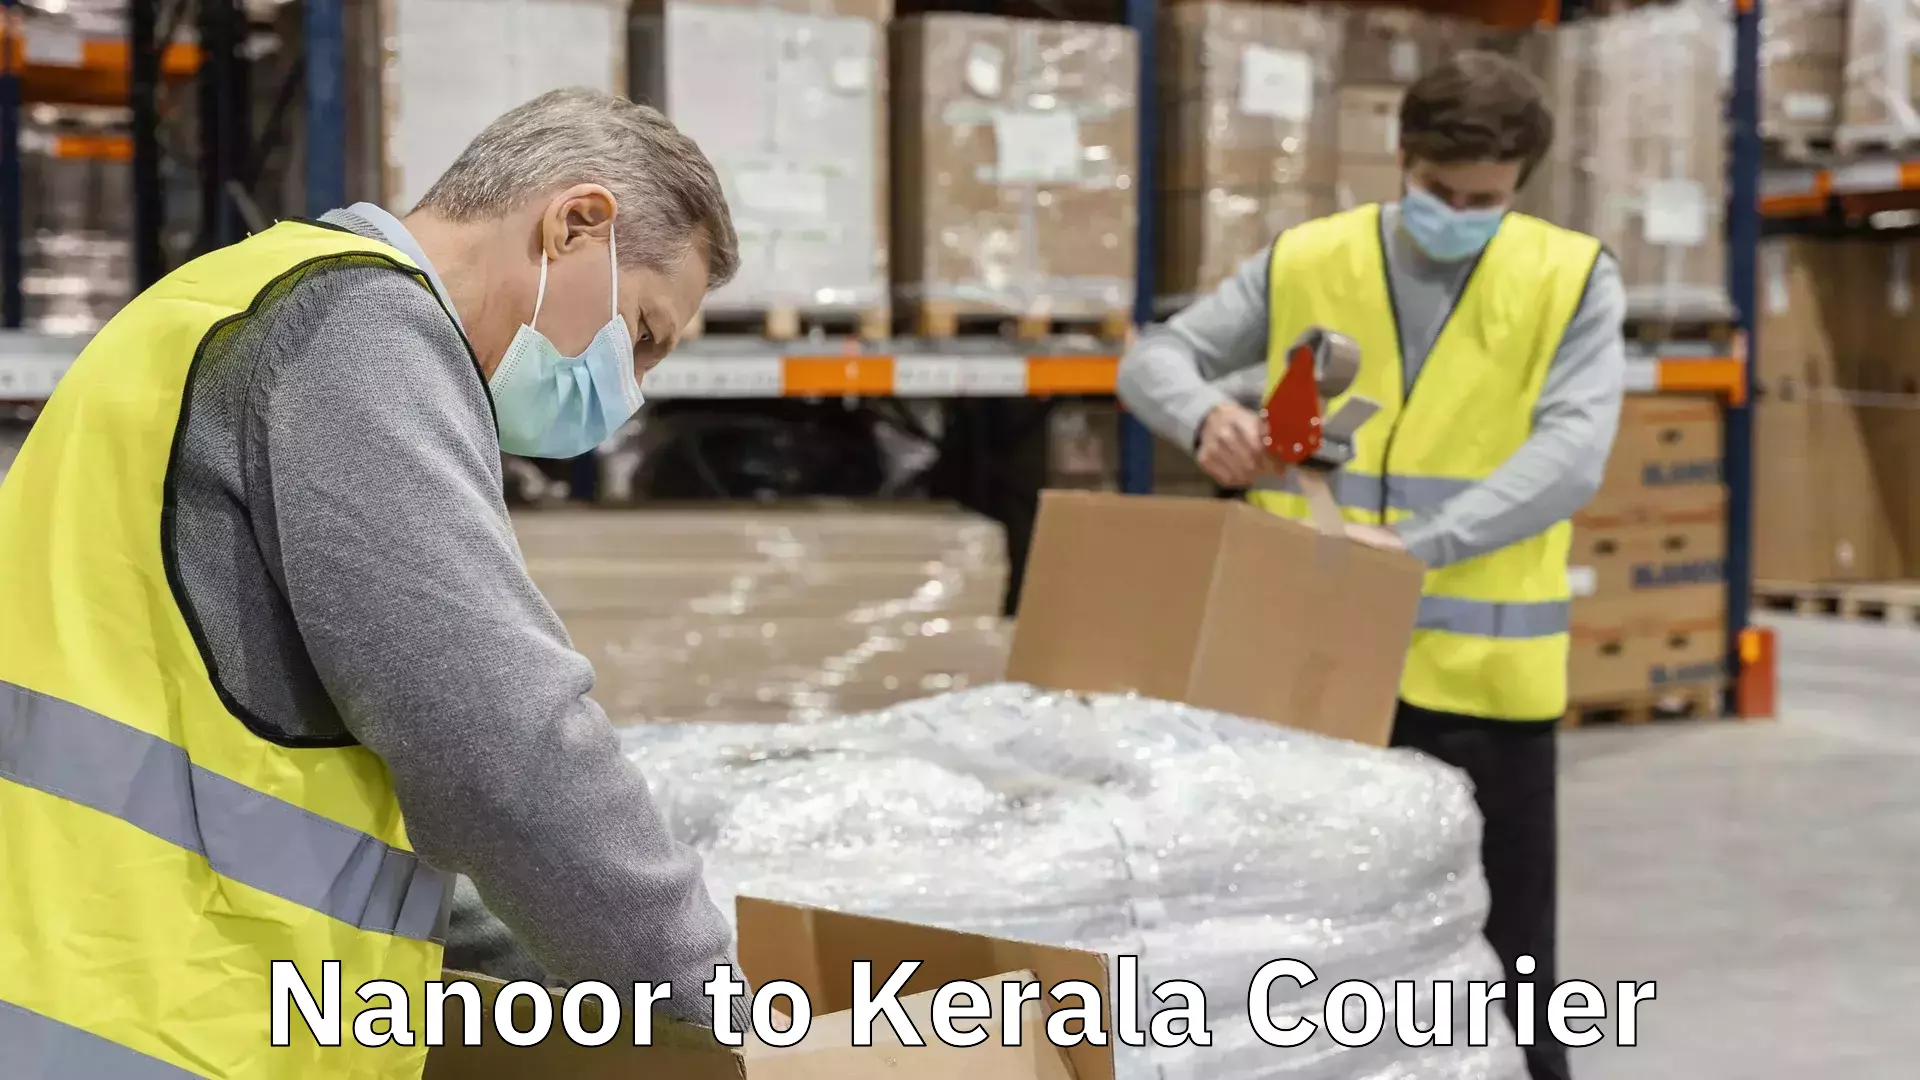 Courier app Nanoor to Kerala